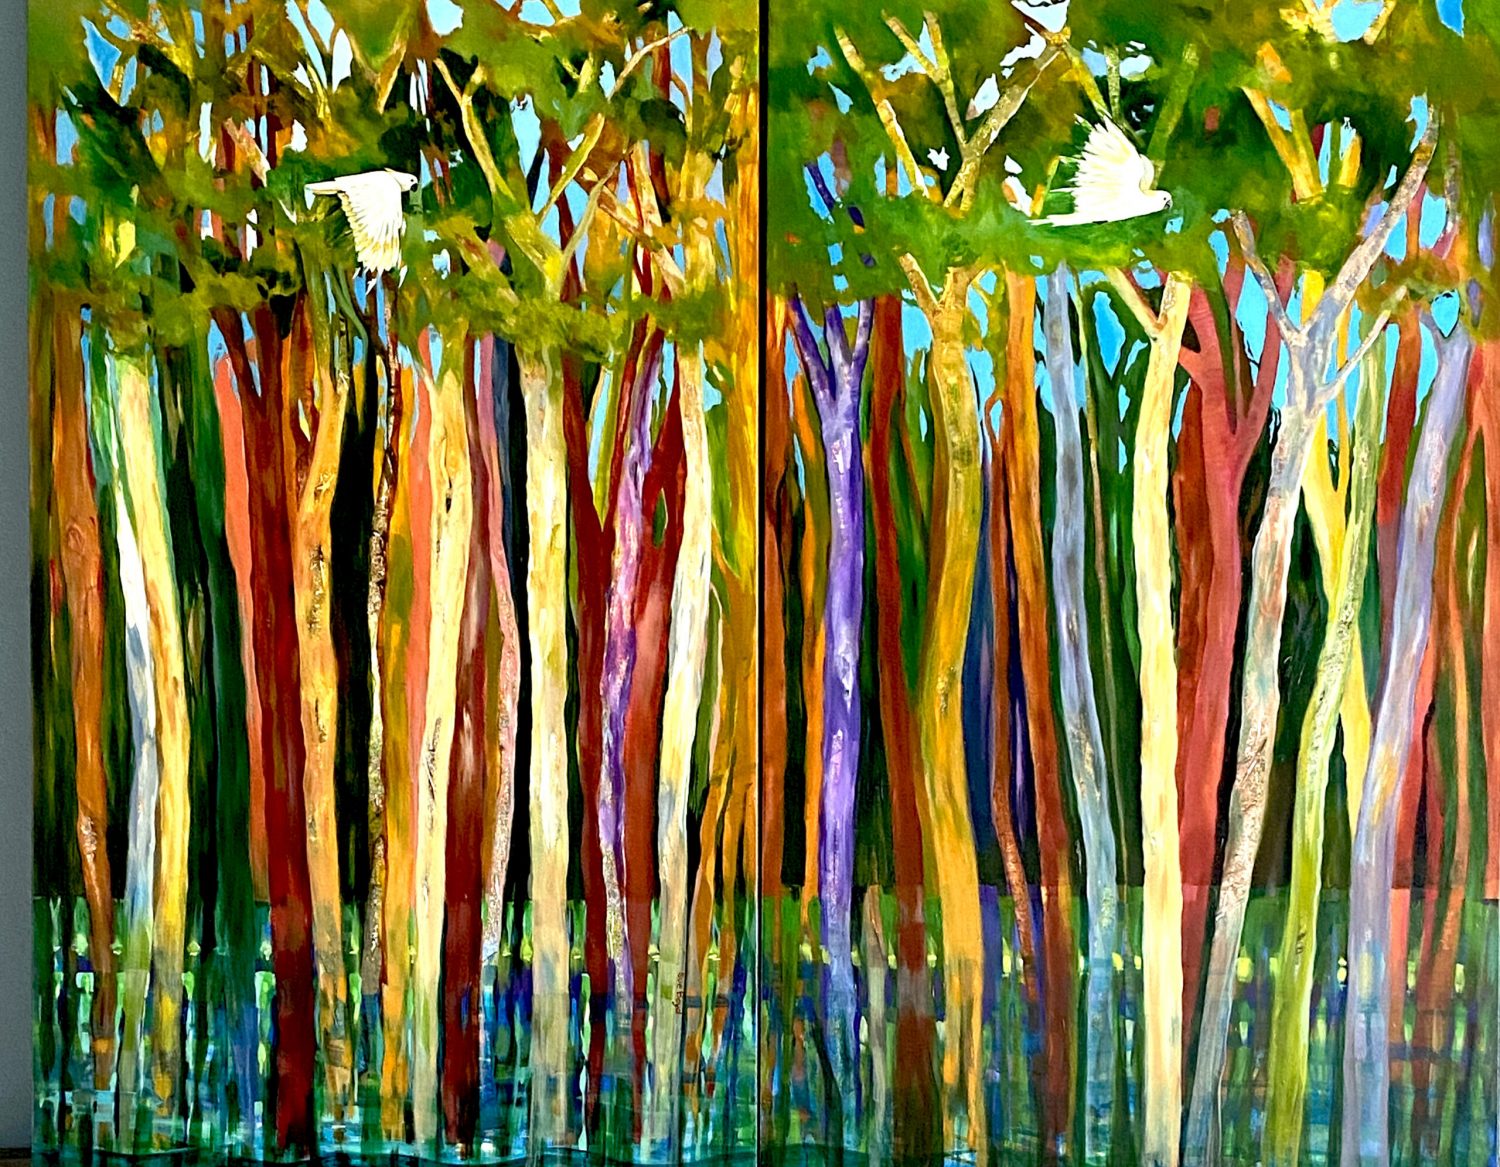 Riverside Trees - separate paintings - 1200 x 800 each - SOLD